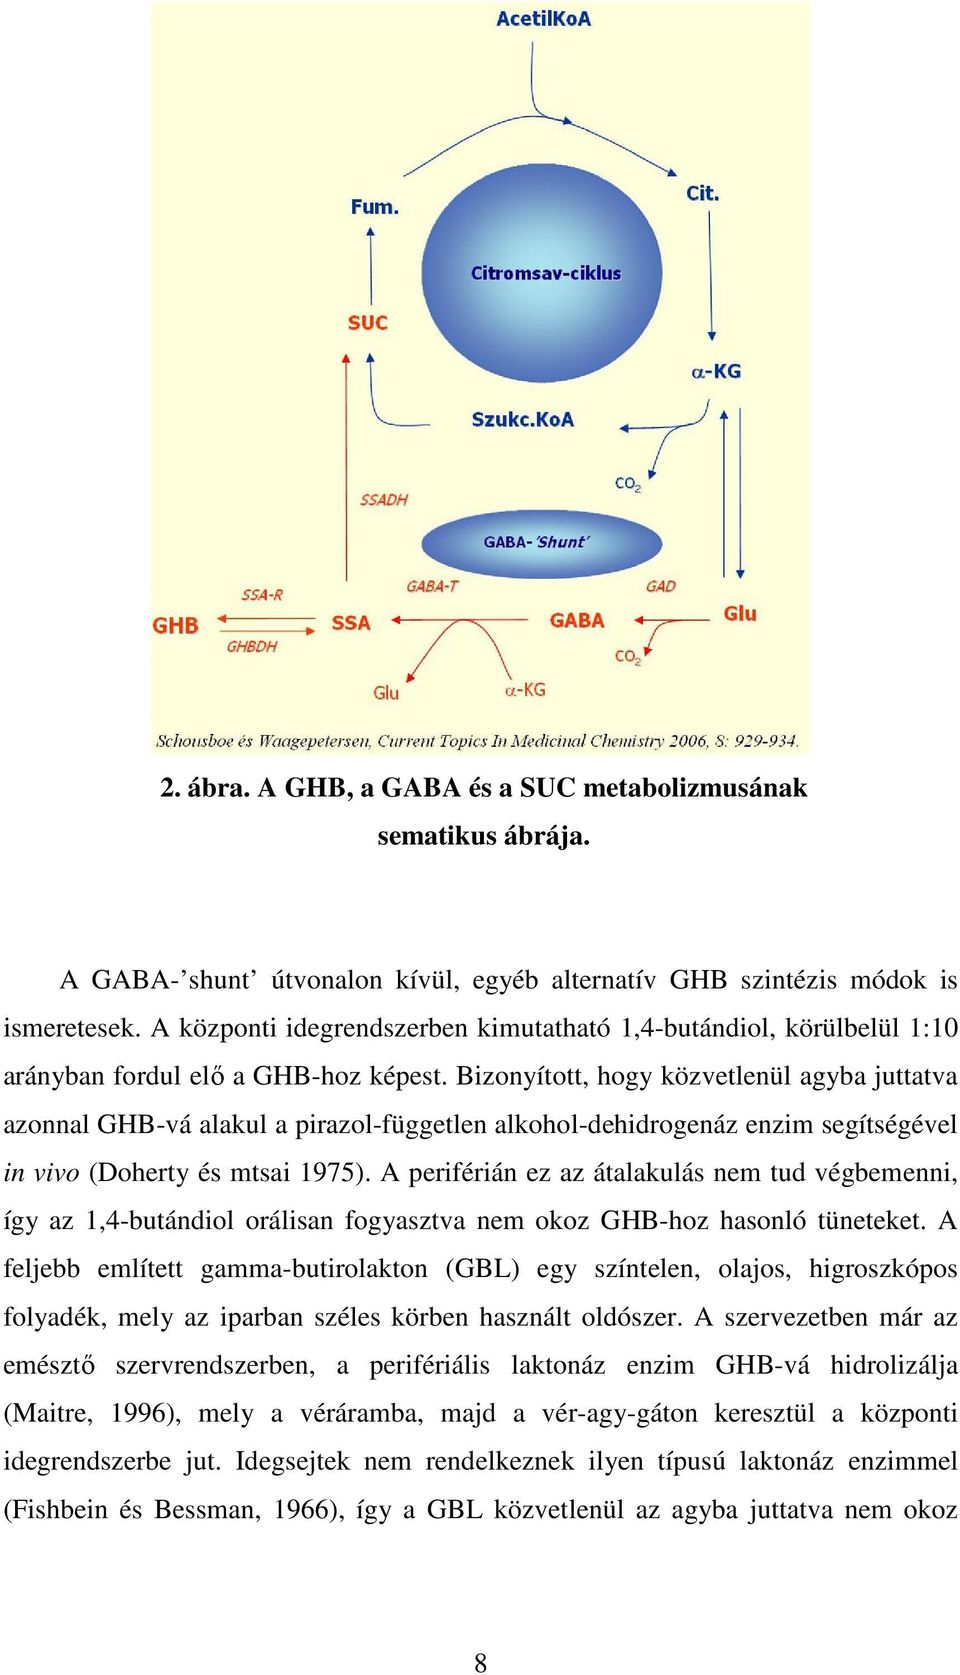 Bizonyított, hogy közvetlenül agyba juttatva azonnal GHB-vá alakul a pirazol-független alkohol-dehidrogenáz enzim segítségével in vivo (Doherty és mtsai 1975).